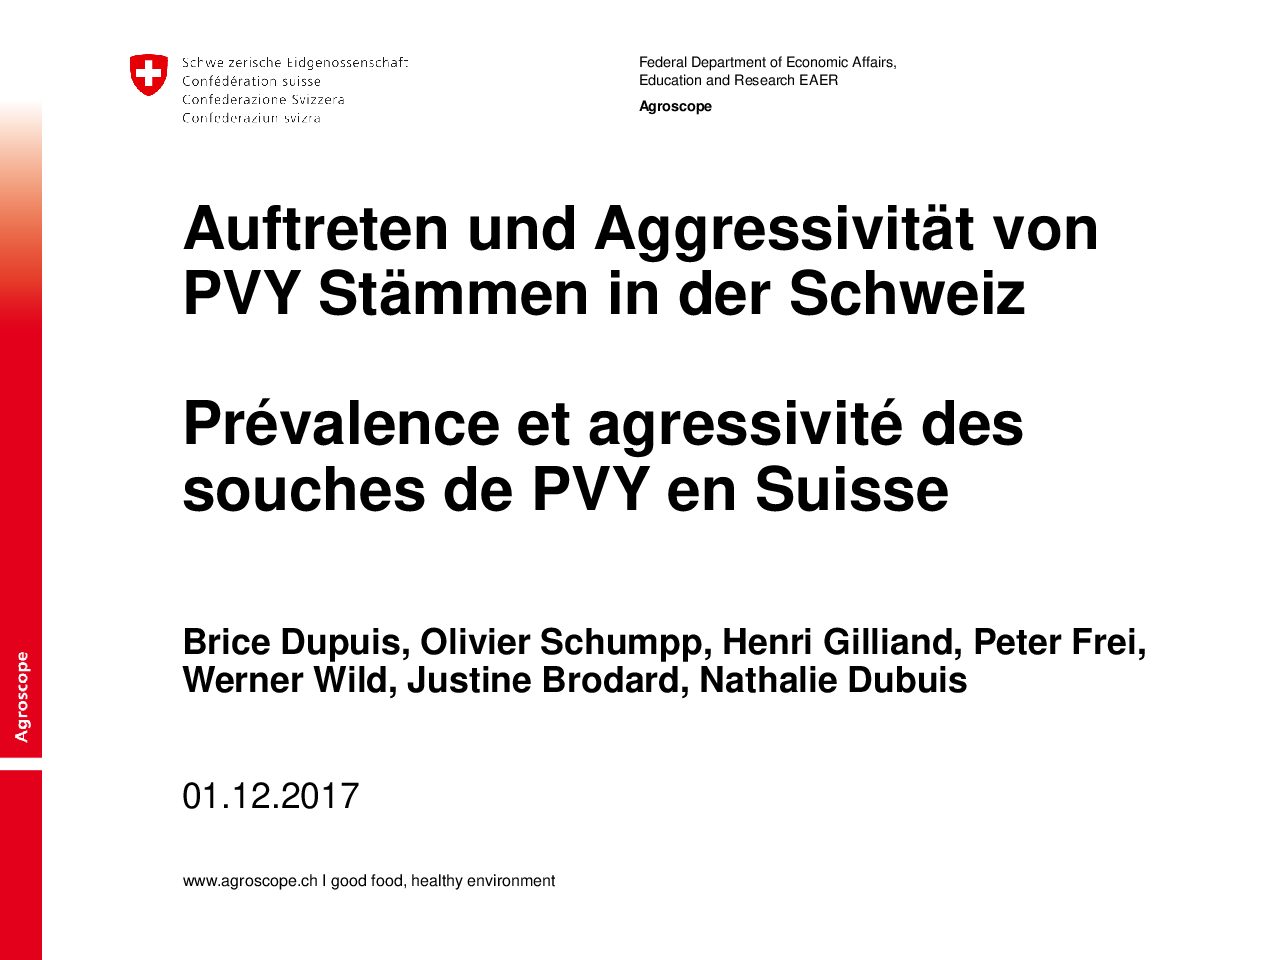 Auftreten und Aggressivität von PVY Stämmen in der Schweiz (Agroscope)